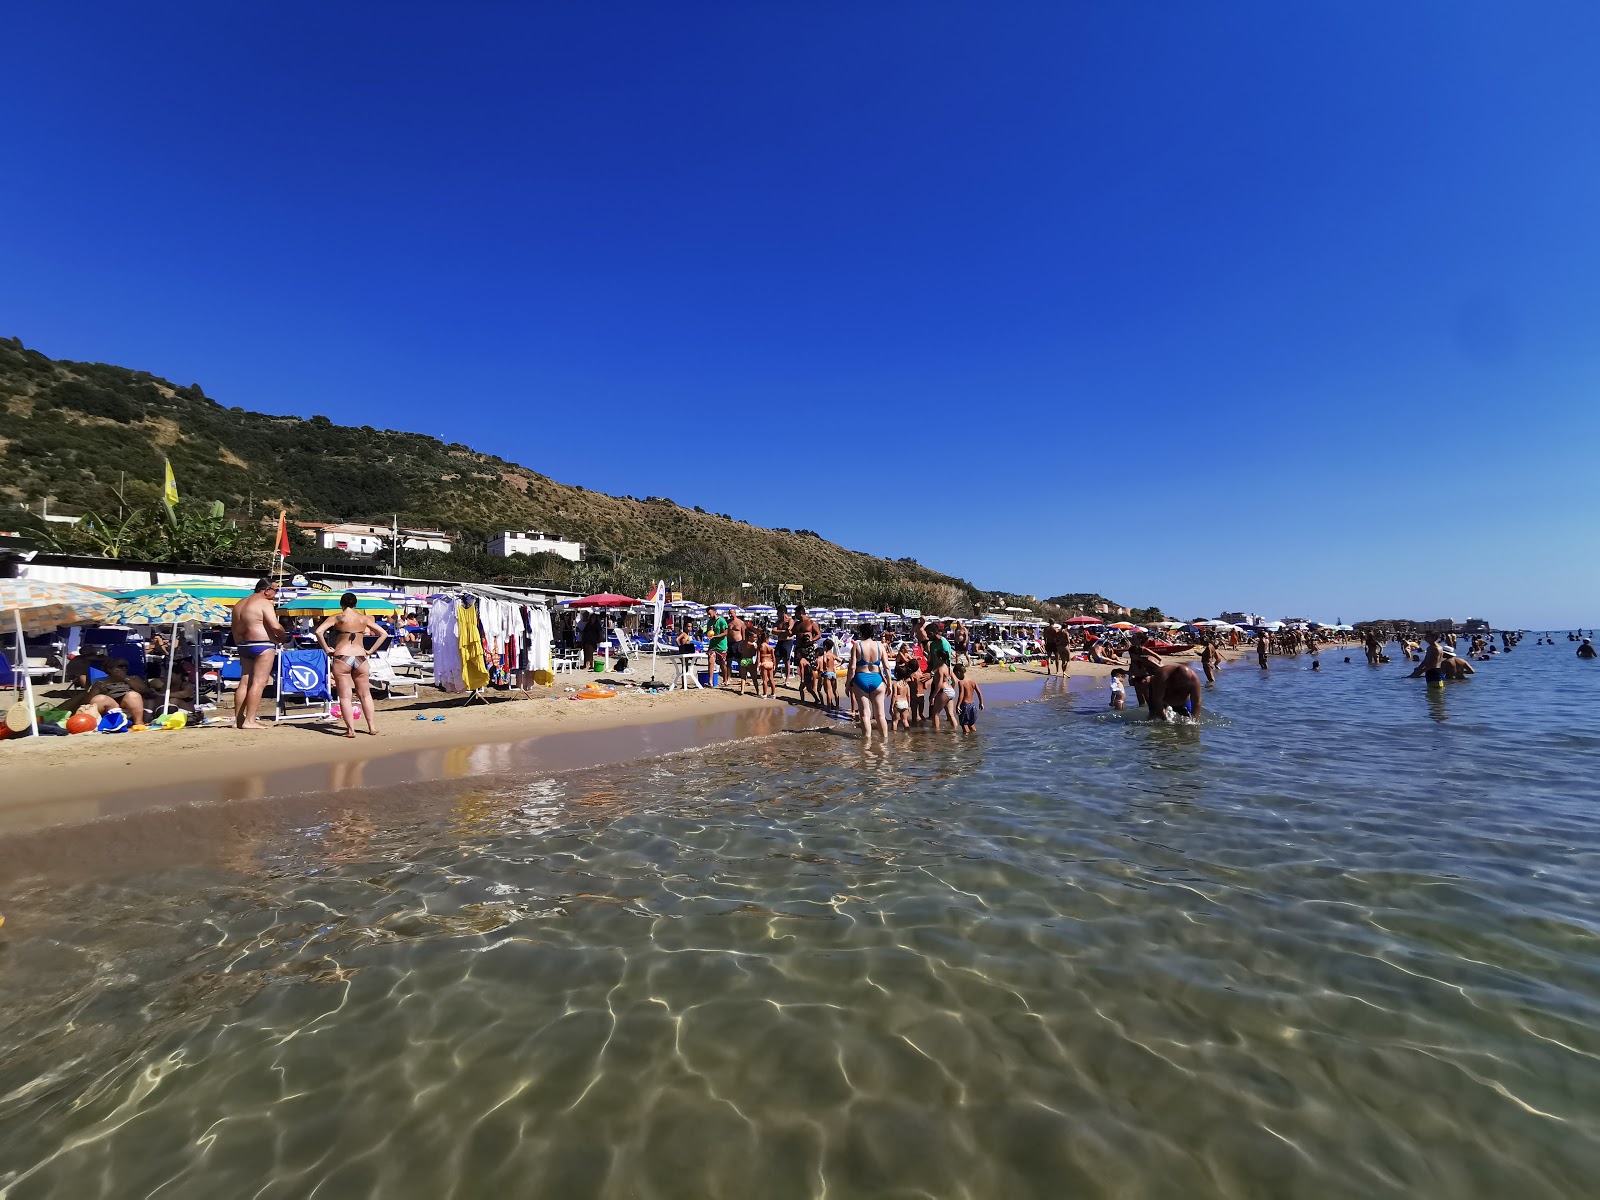 Acciaroli Plajı'in fotoğrafı i̇nce kahverengi kum yüzey ile